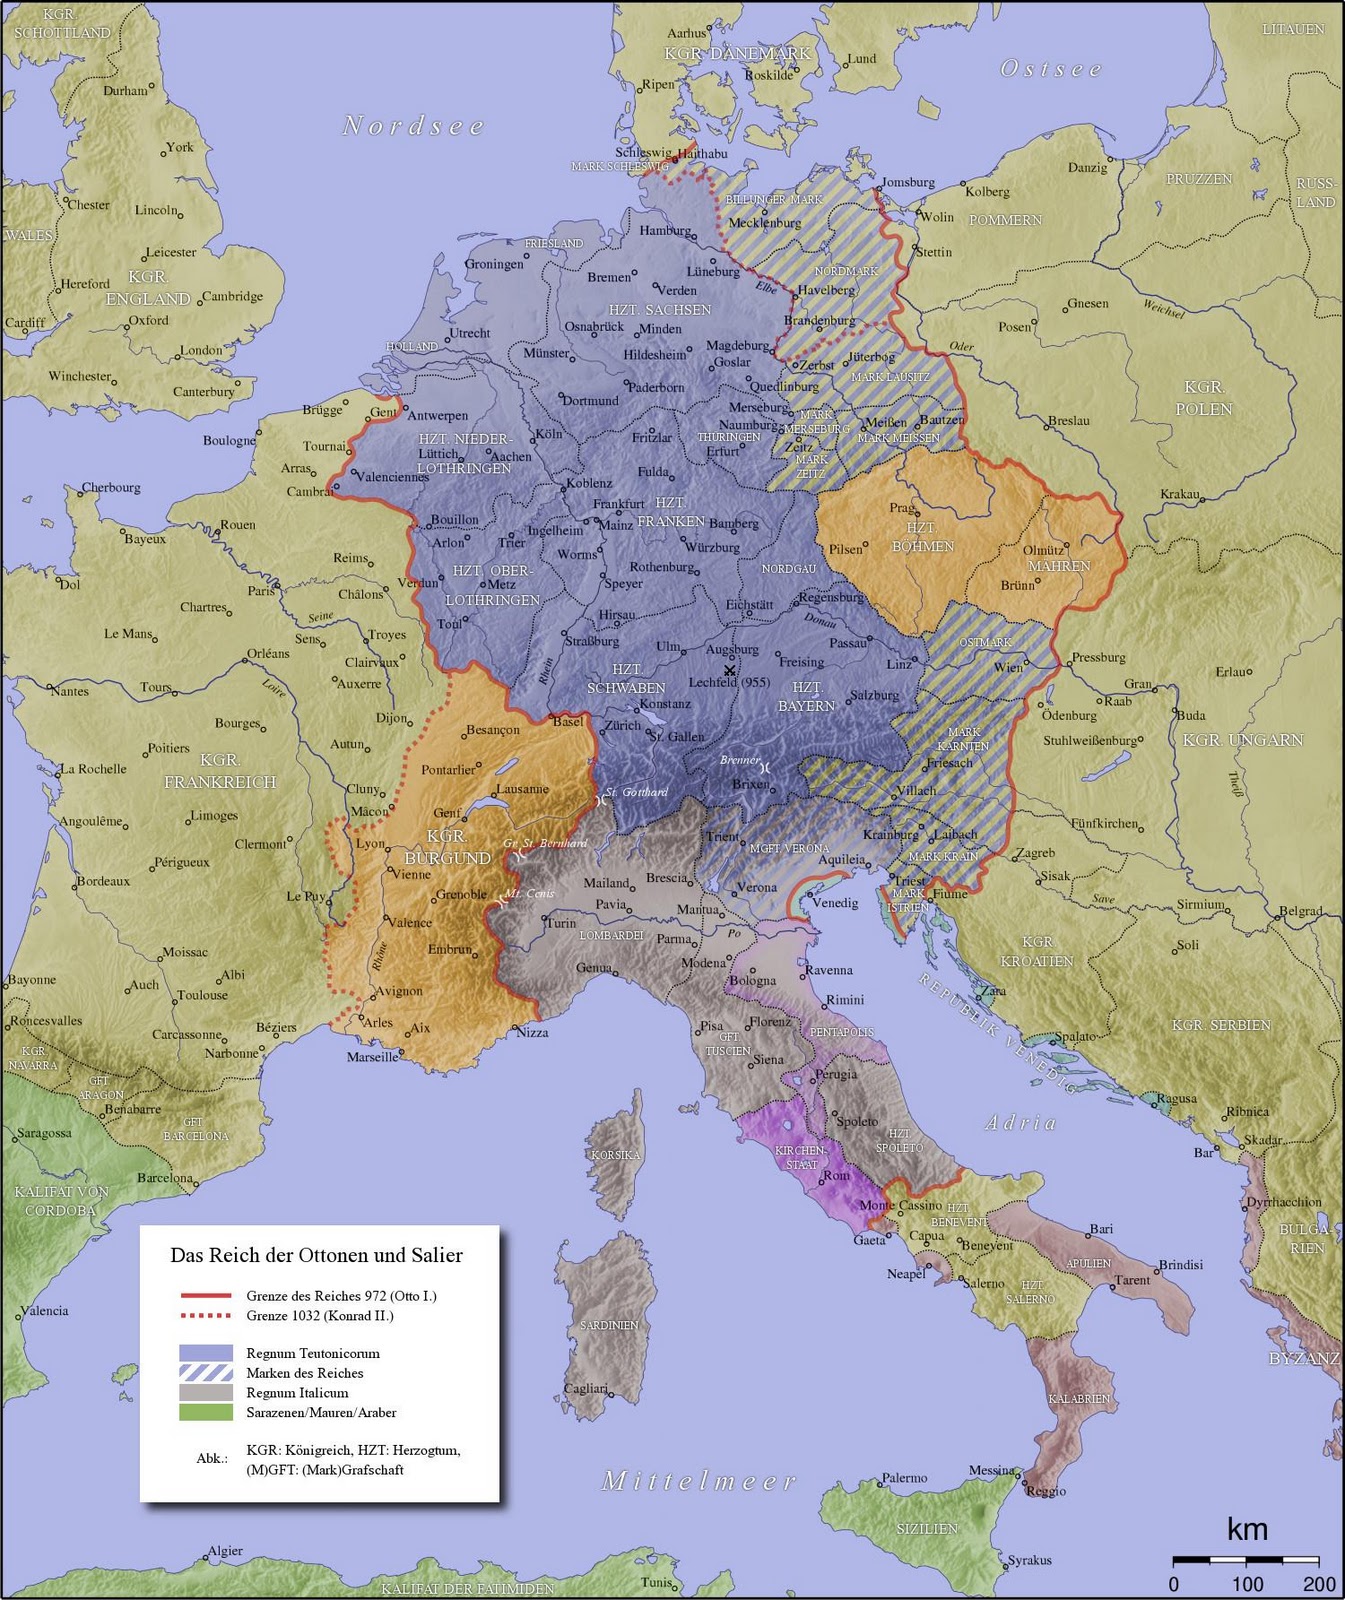 L'Europa degli Ottoni nel 1031 (Sacro Romano Impero)